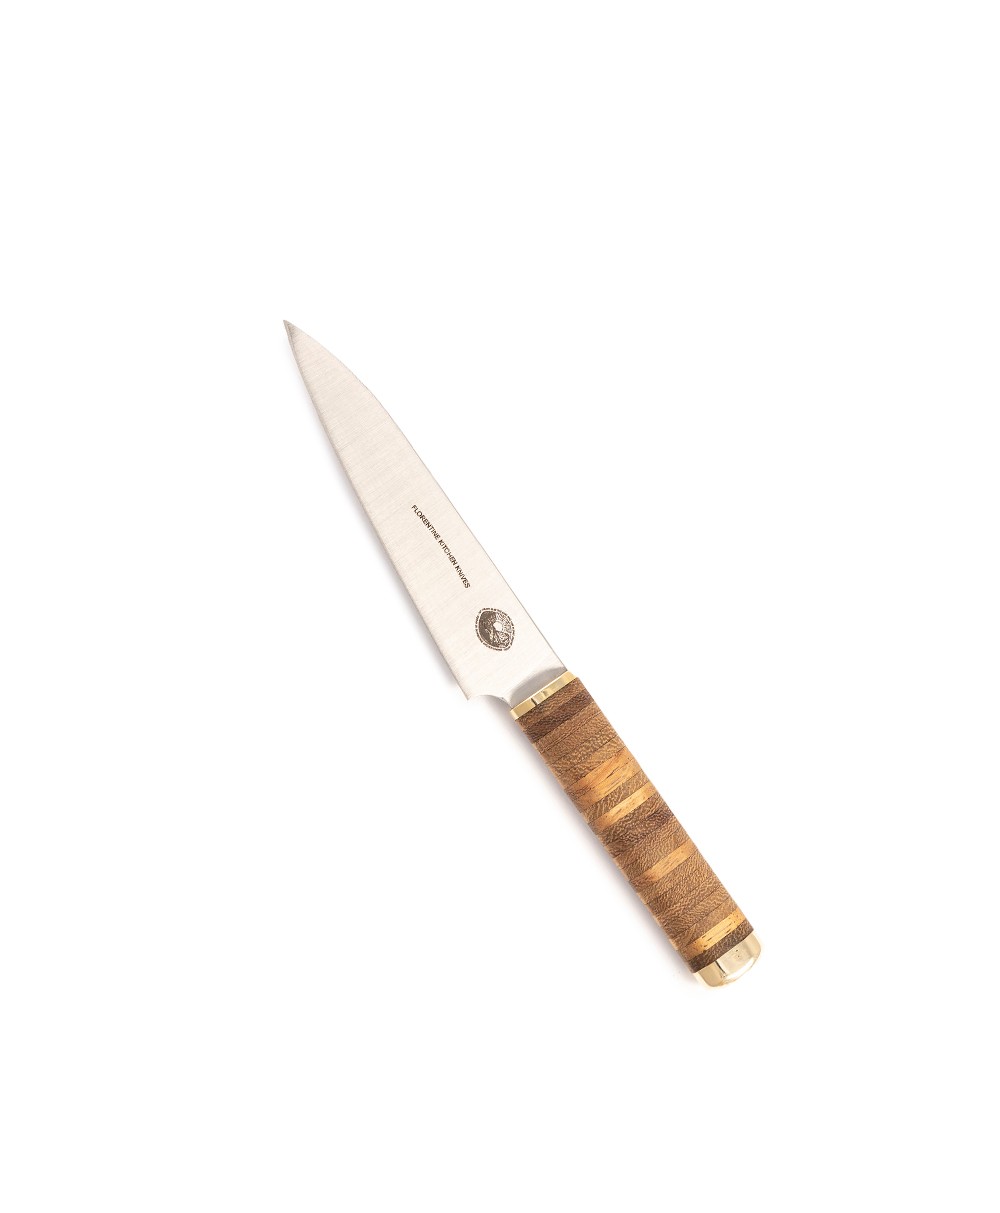 Produktbild des Kedma Paring Küchenmesser in wood von Florentine Kitchen Knives im RAUM concept store 